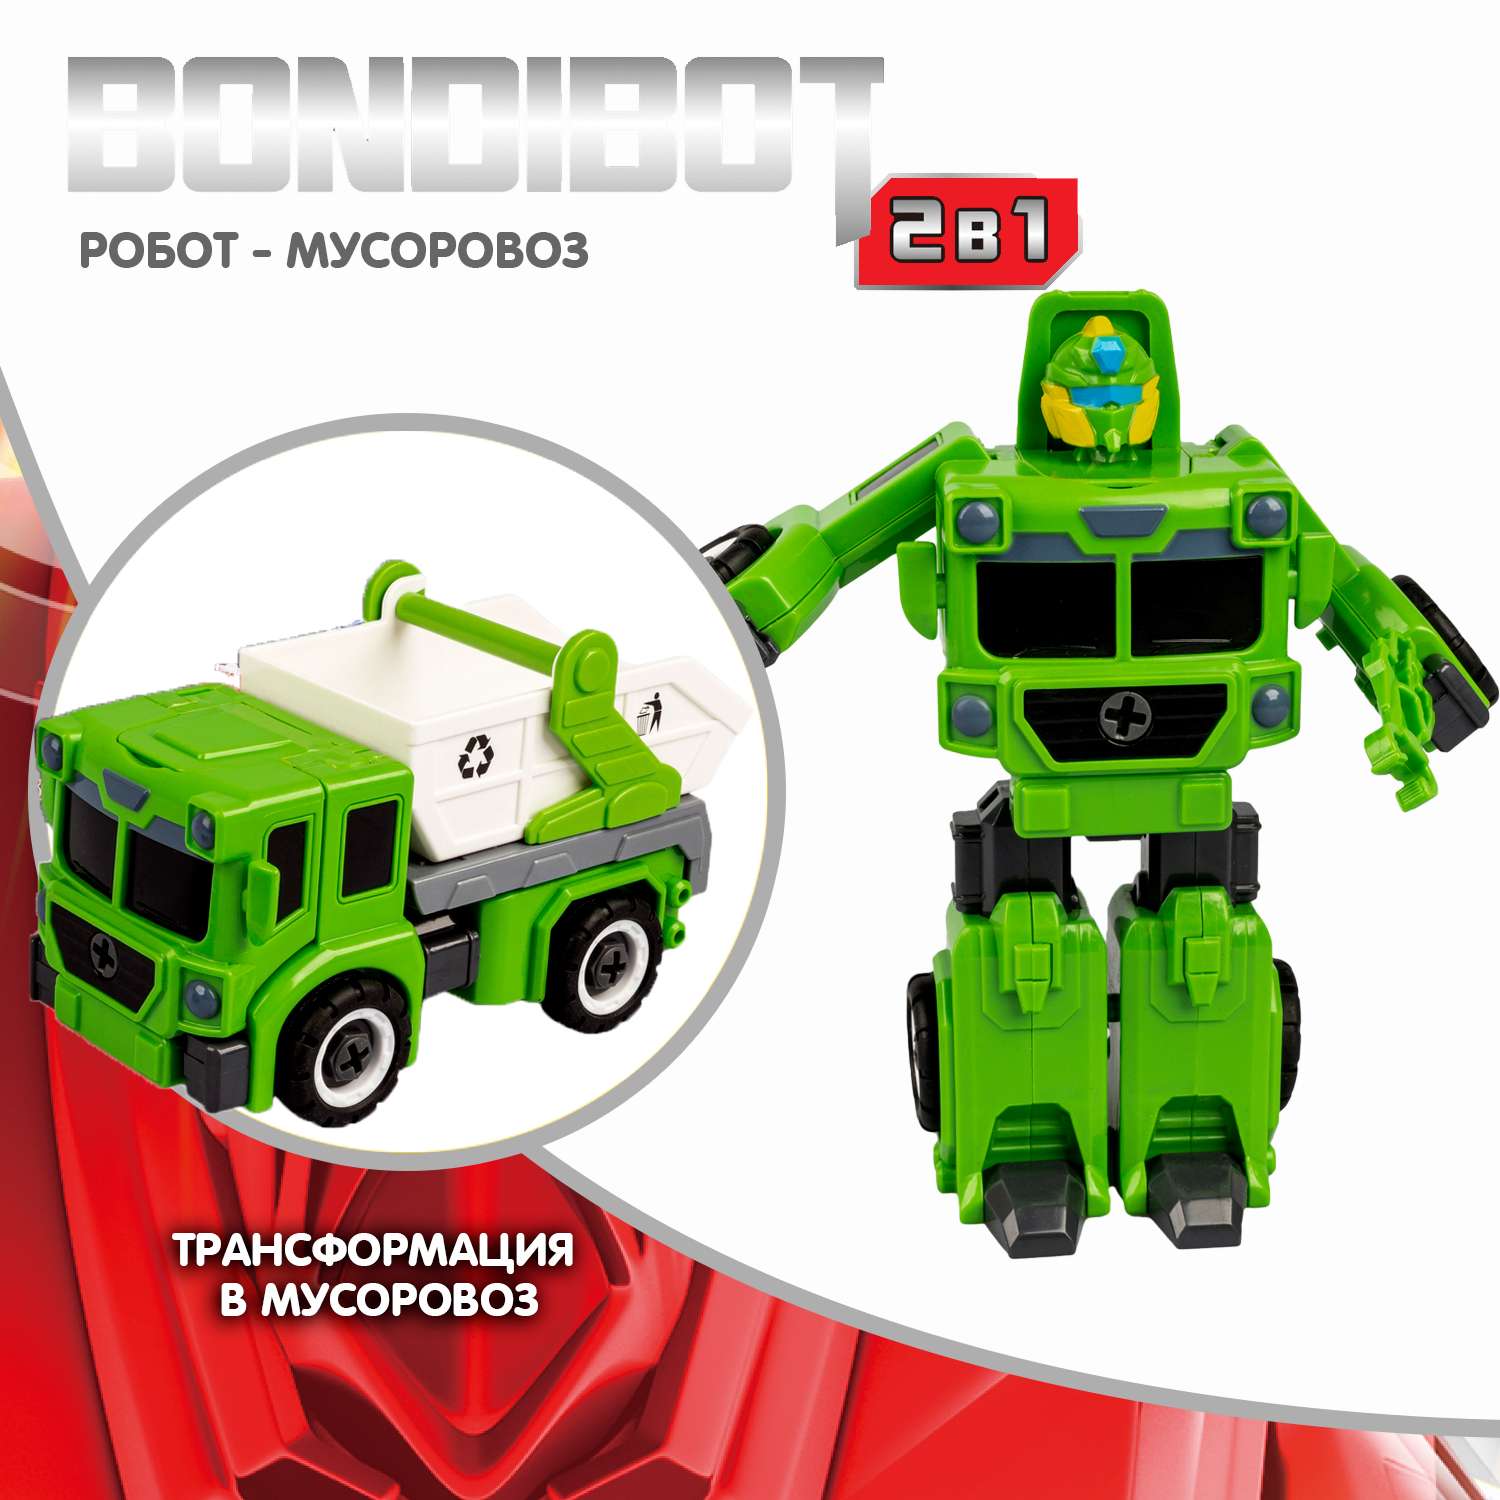 Трансформер-конструктор BONDIBON Bondibot Робот-мусоровоз 2 в 1 бело-зеленого цвета с отвёрткой - фото 2